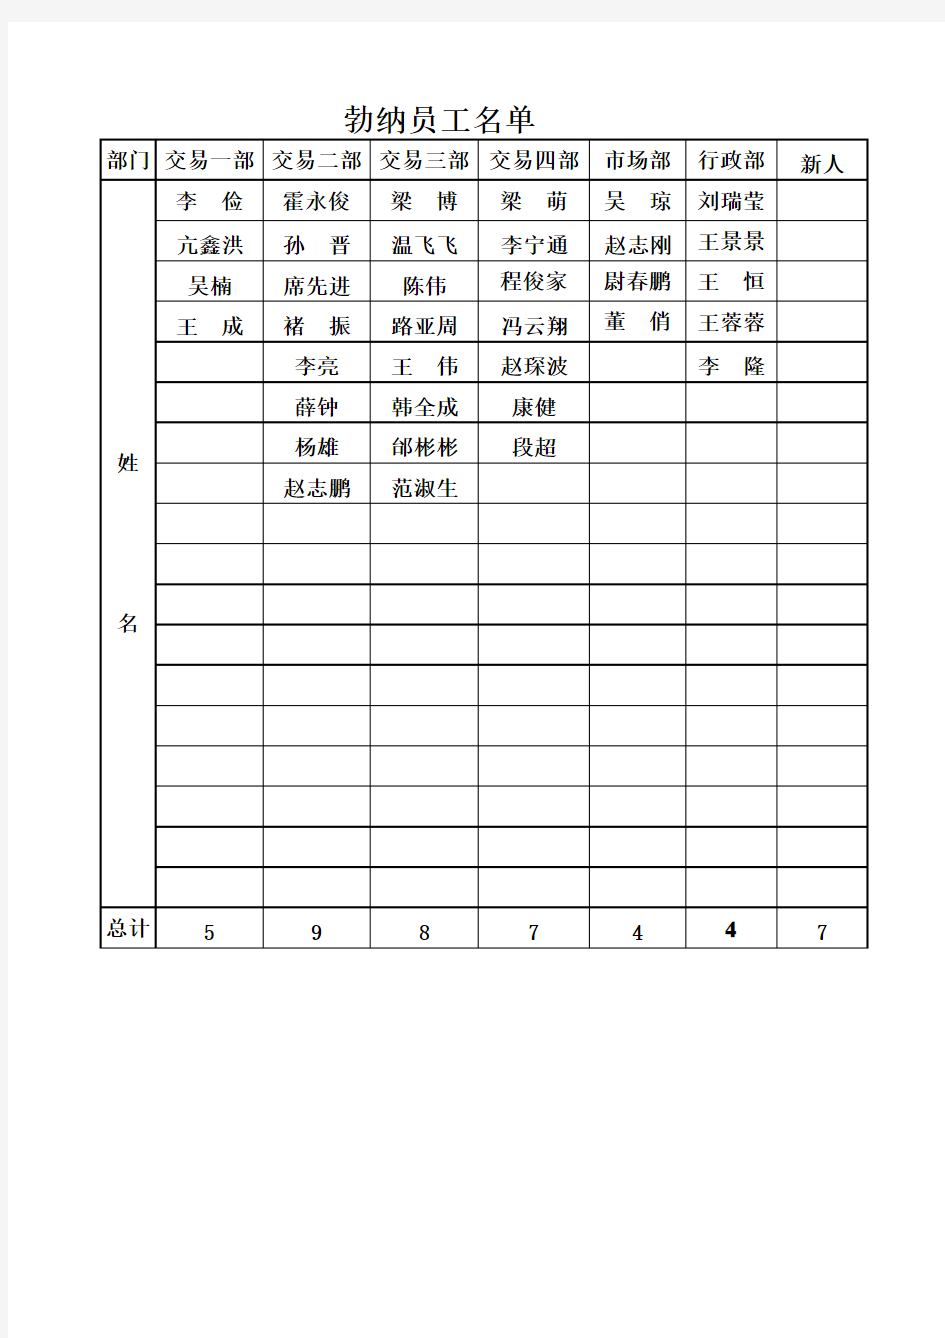 员工名单 Excel 工作表 (3)